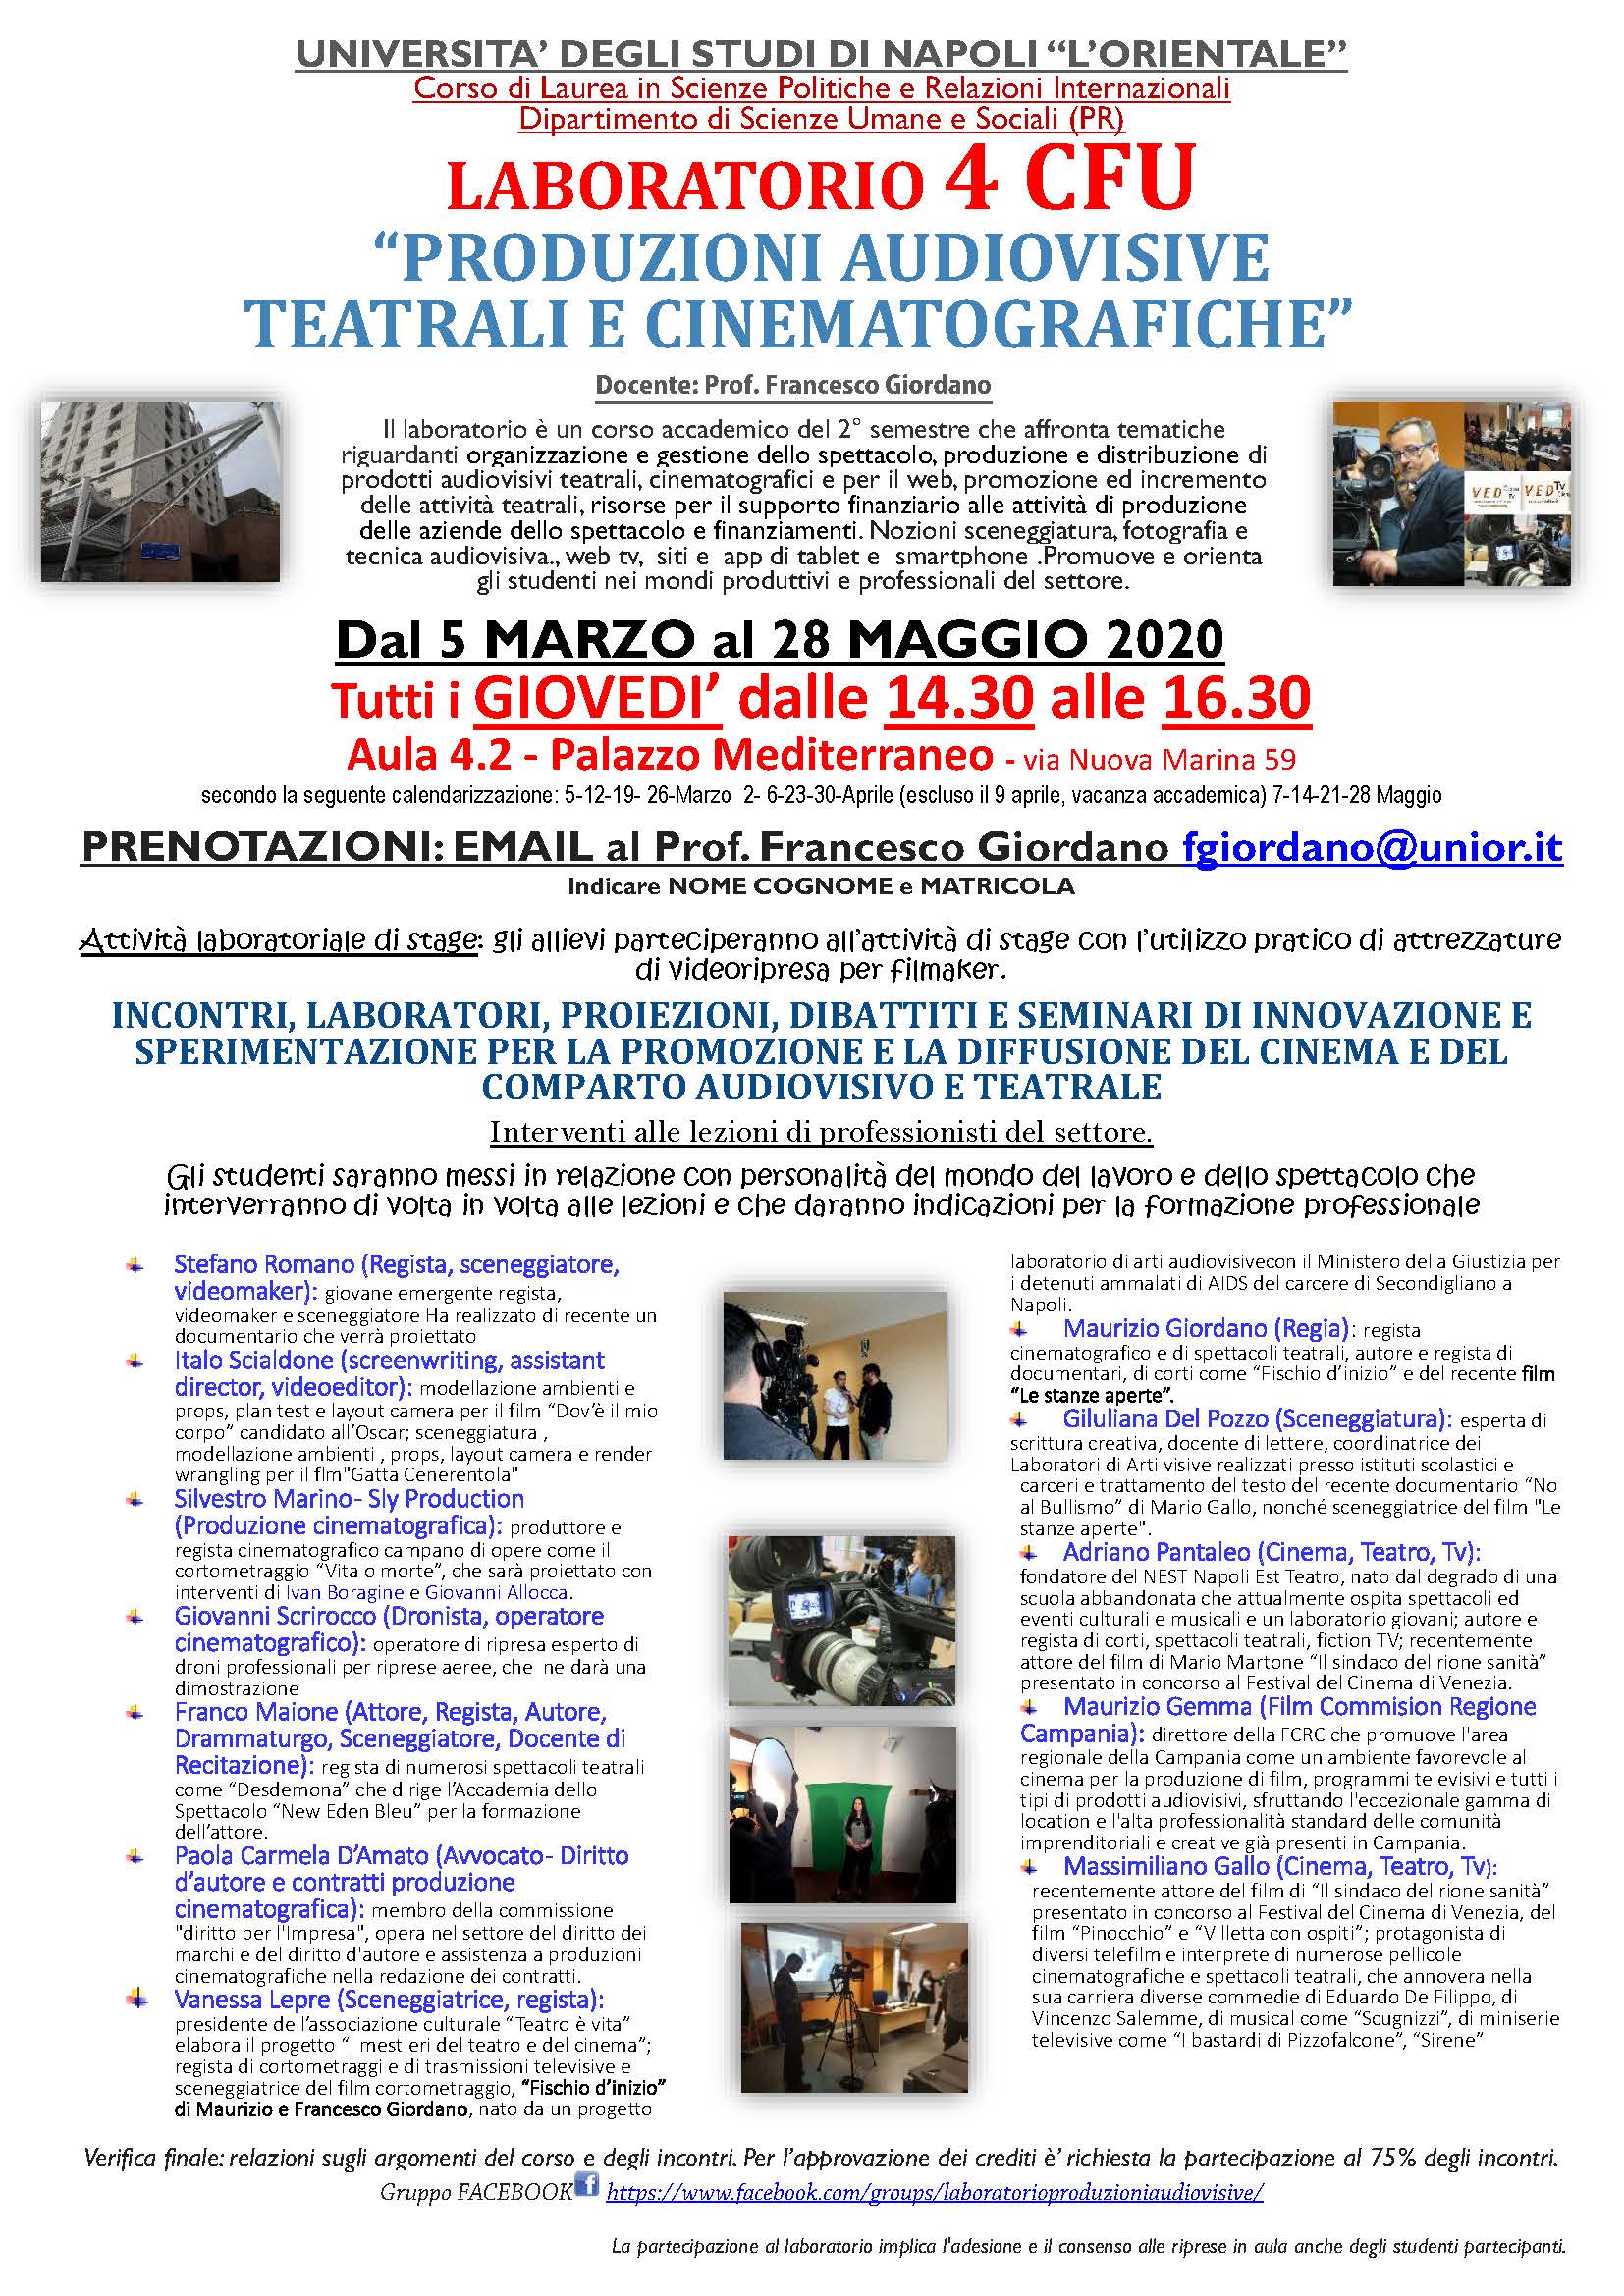 LABORATORIO DI PRODUZIONI AUDIOVISIVE, TEATRALI E CINEMATOGRAFICHE  - Prof. Francesco Giordano